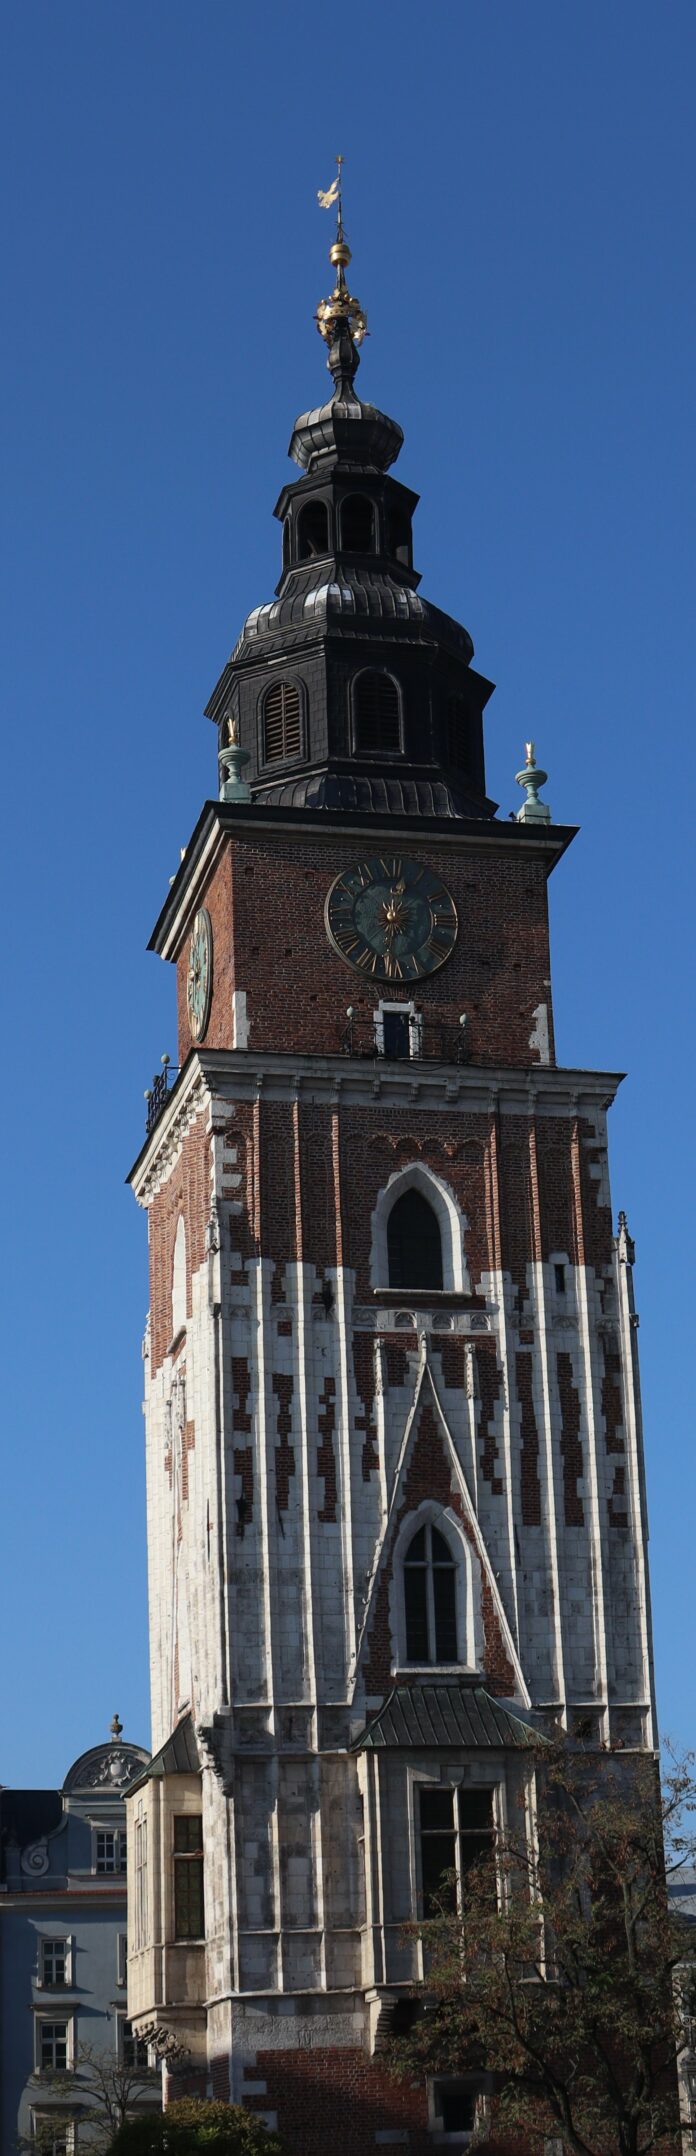 Zdjęcie więzy Ratuszowej w Krakówe